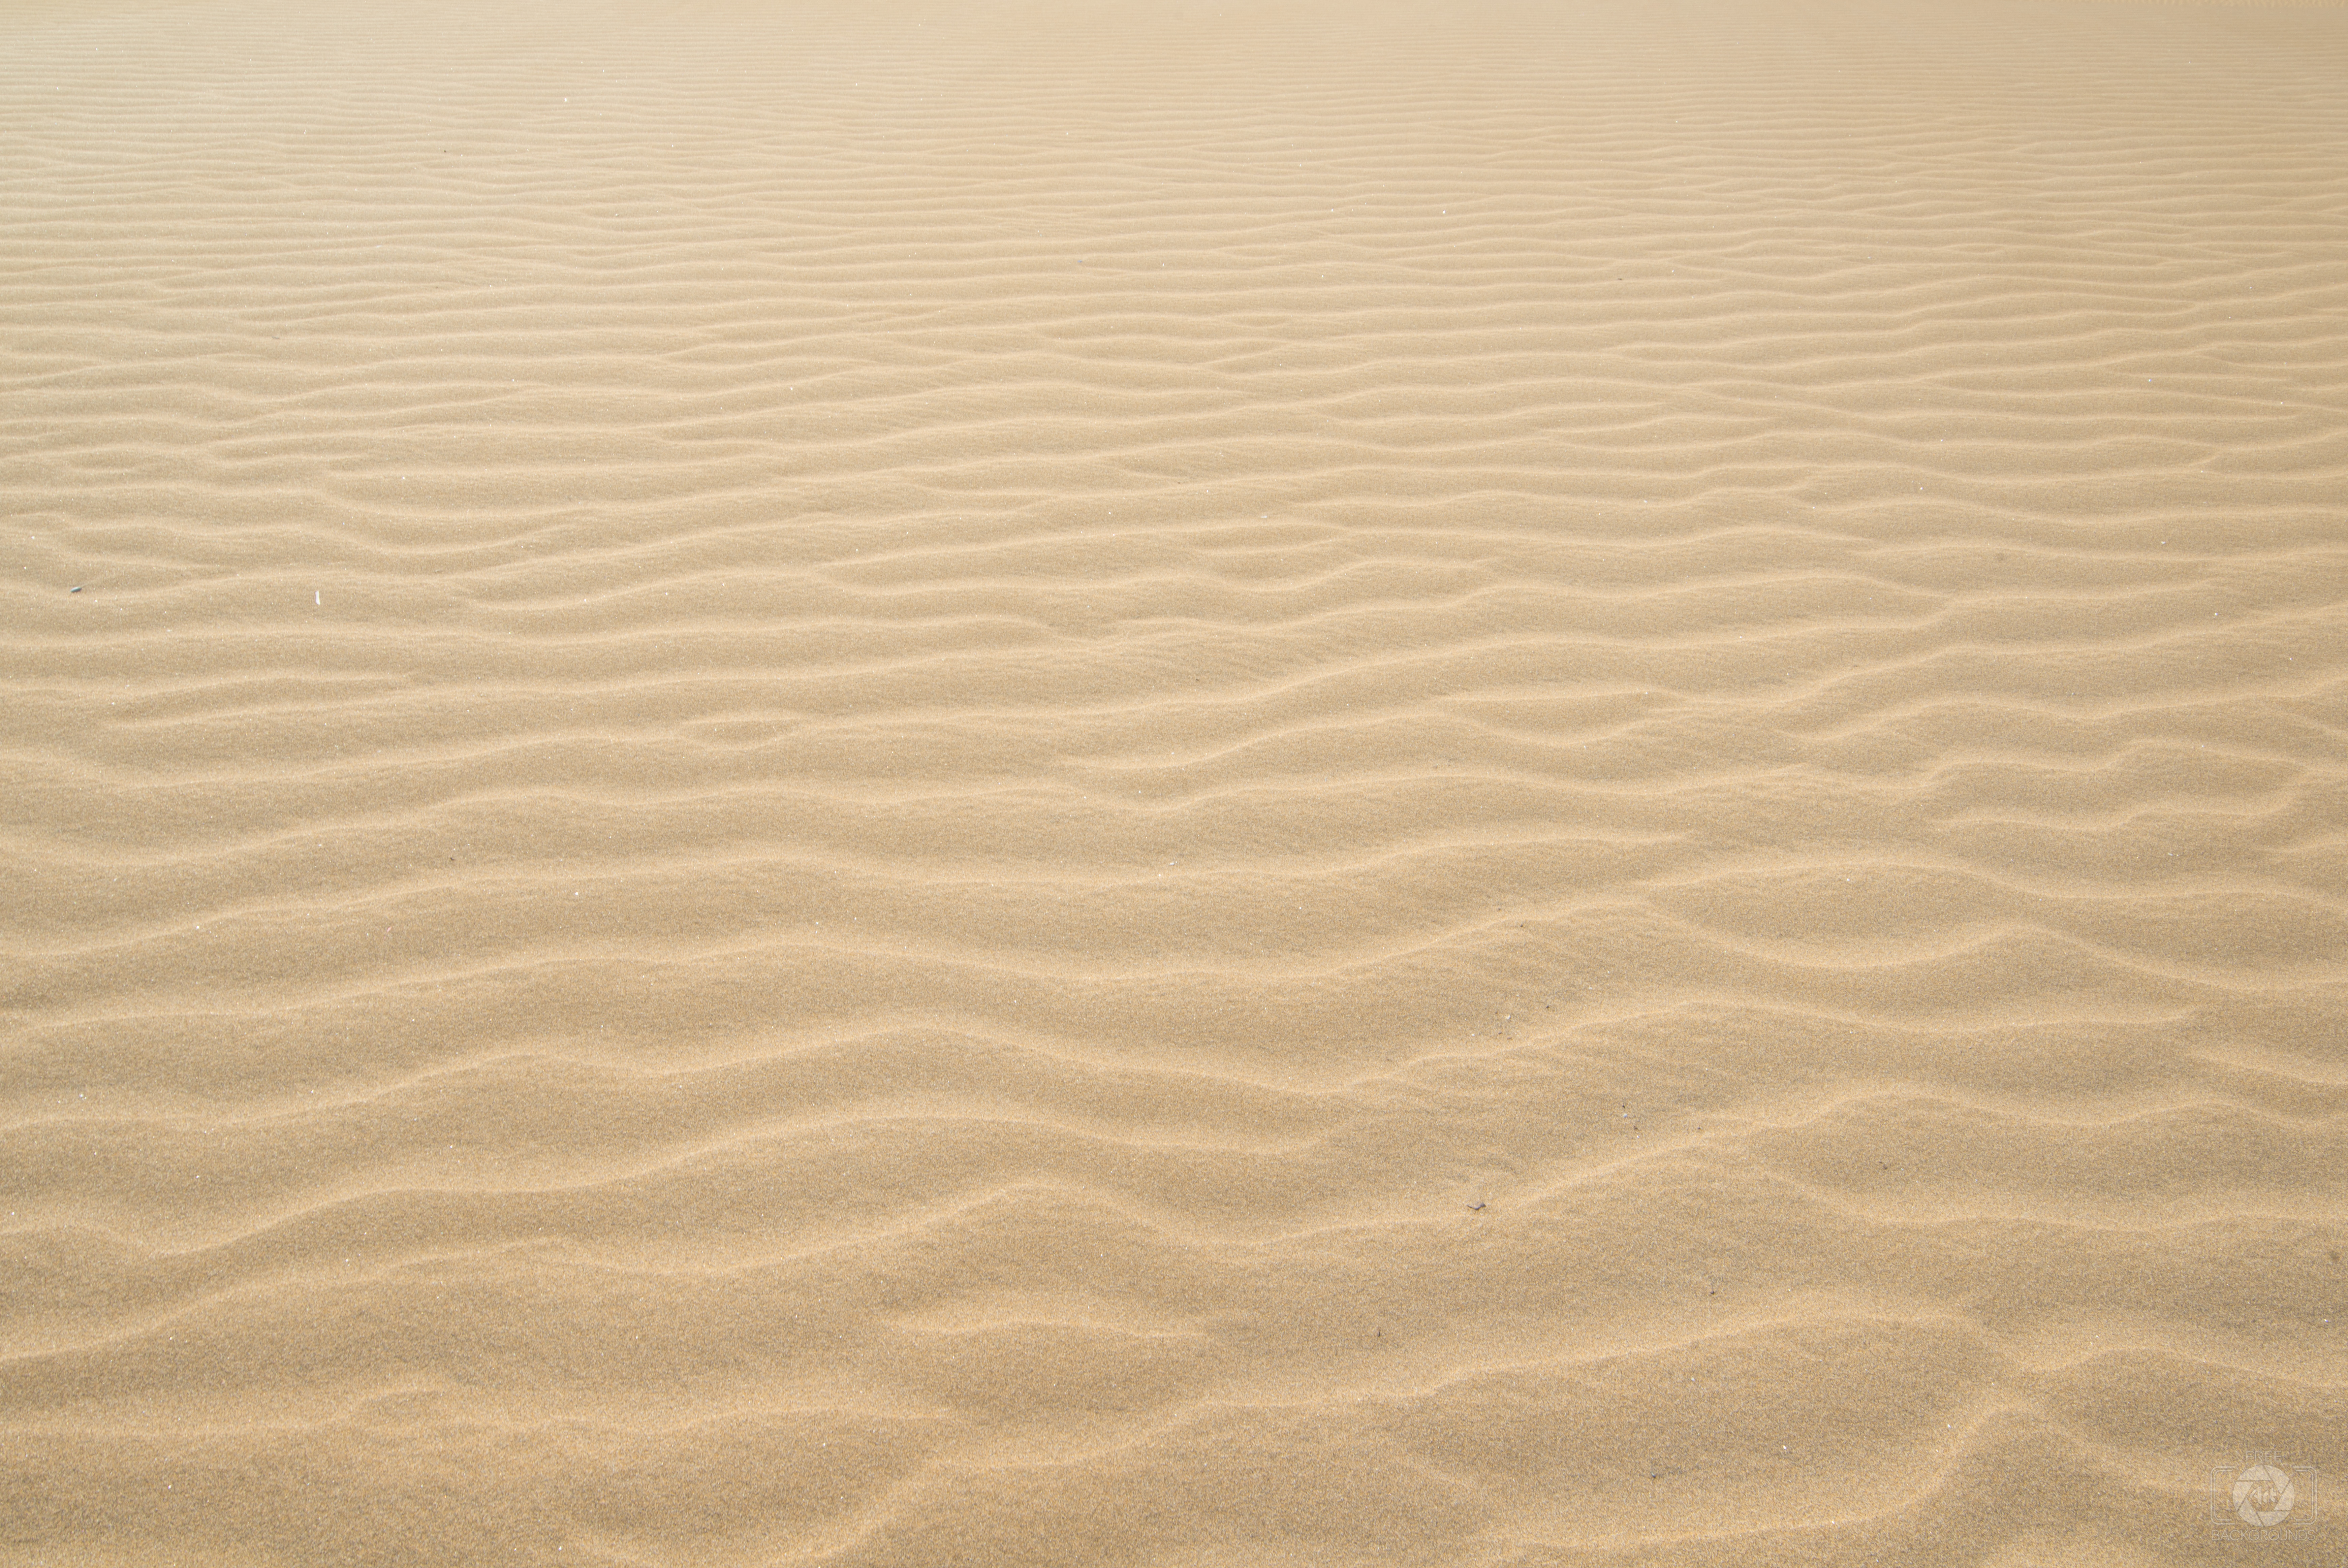 desert sand background